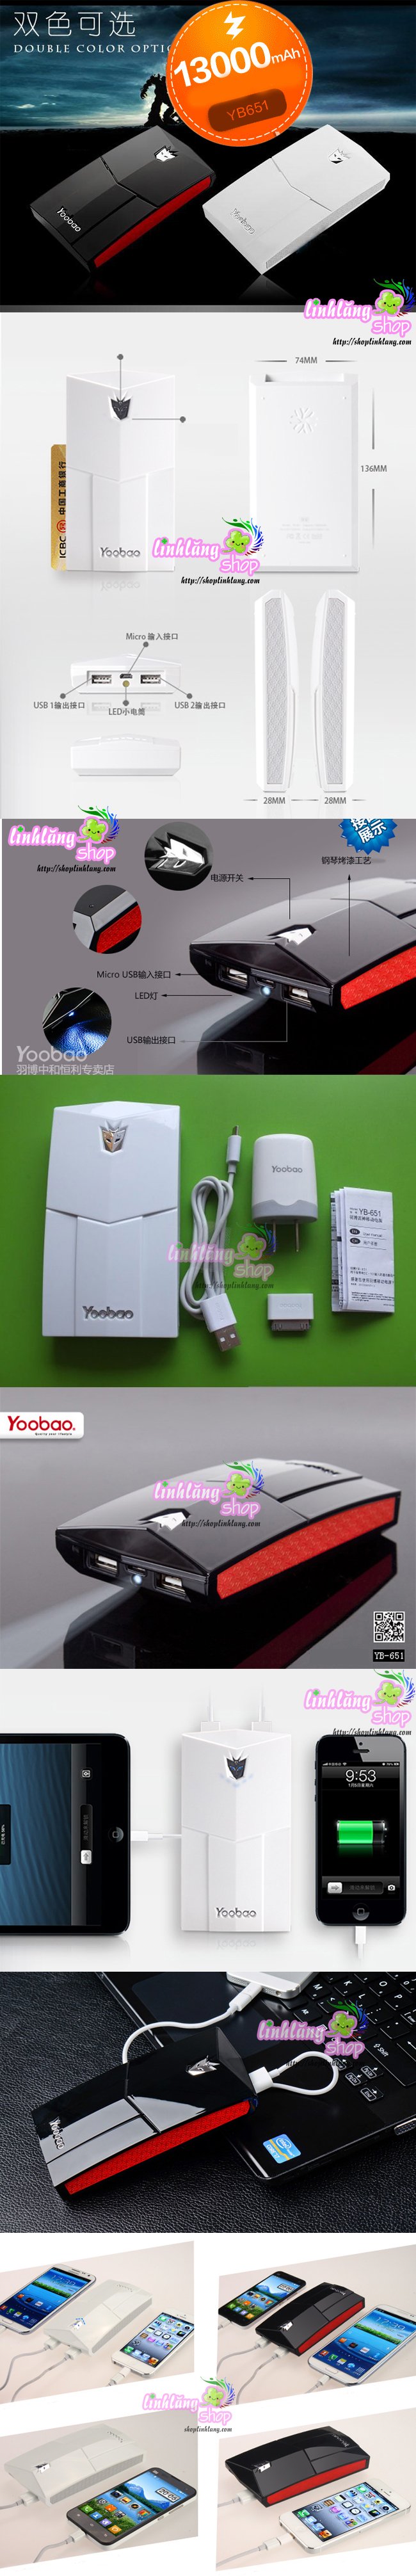 Sạc pin điện thoại dự trữ đa năng YooBao YB-642,651 11200mA,13000mA - 900k, 1150k/1c - 5